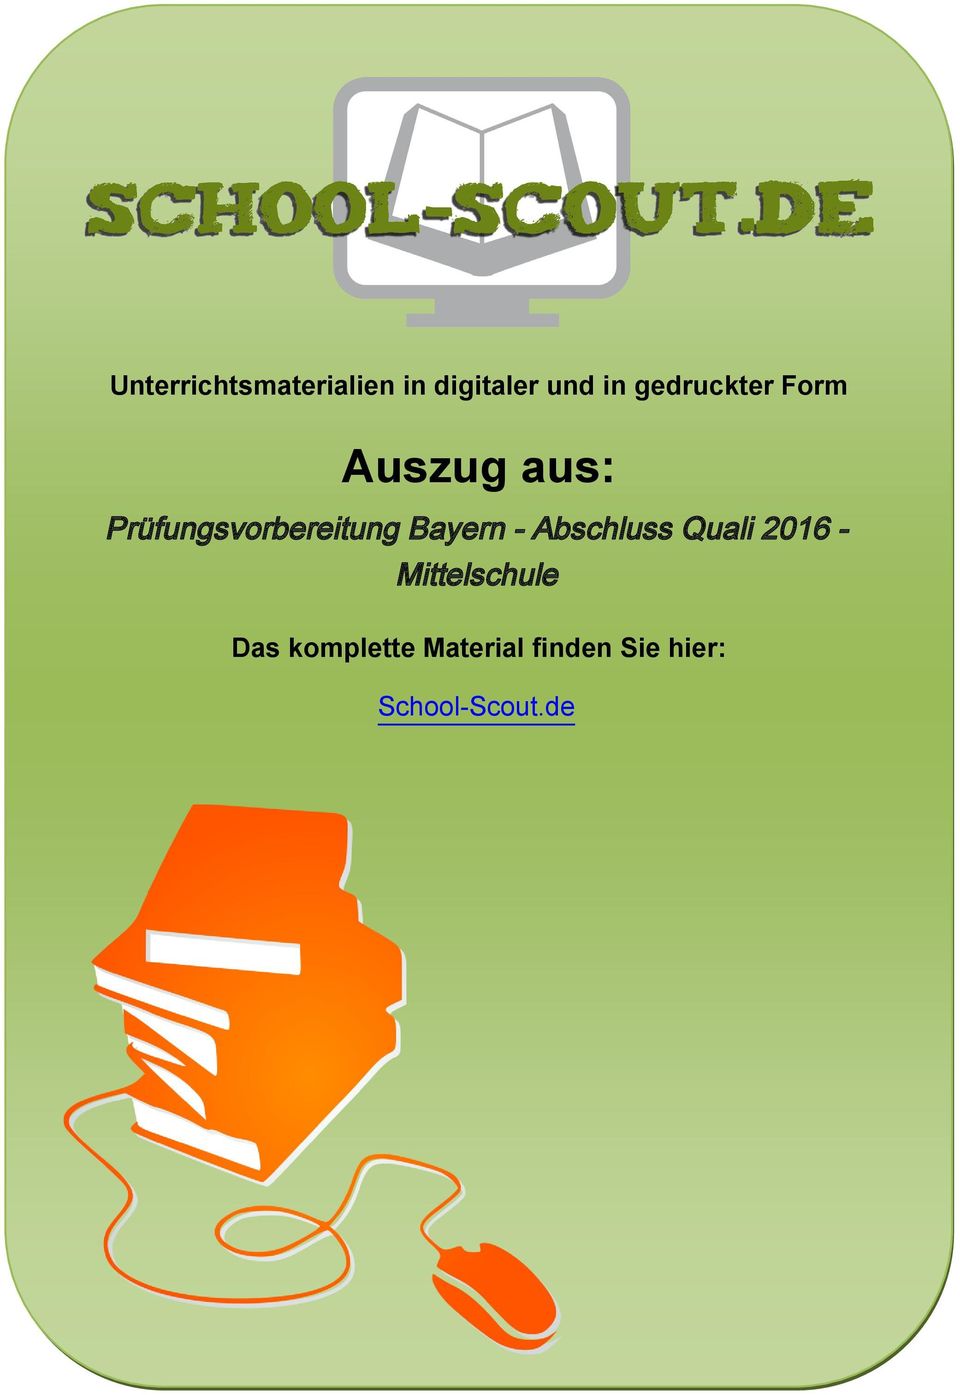 Prüfungsvorbereitung Bayern - Abschluss Quali